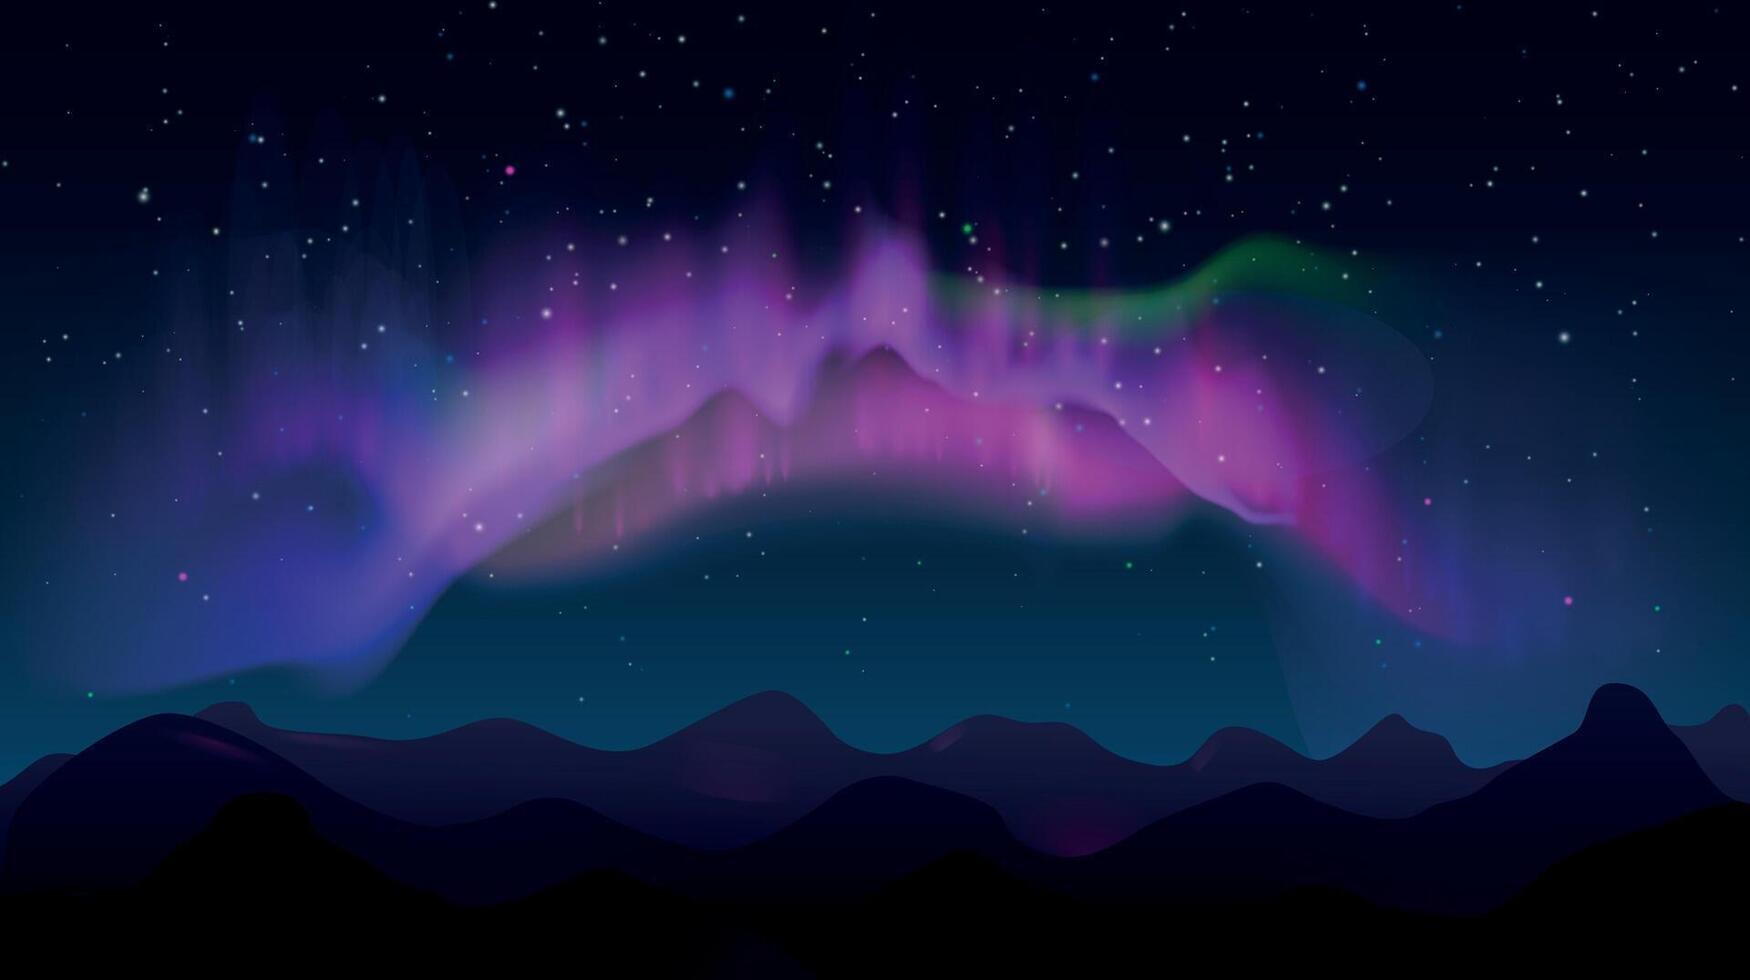 abstrakt berg natt landskap med aurora borealis och stjärnor. nordlig färgad lampor i himmel, polär naturlig lysande vektor illustration